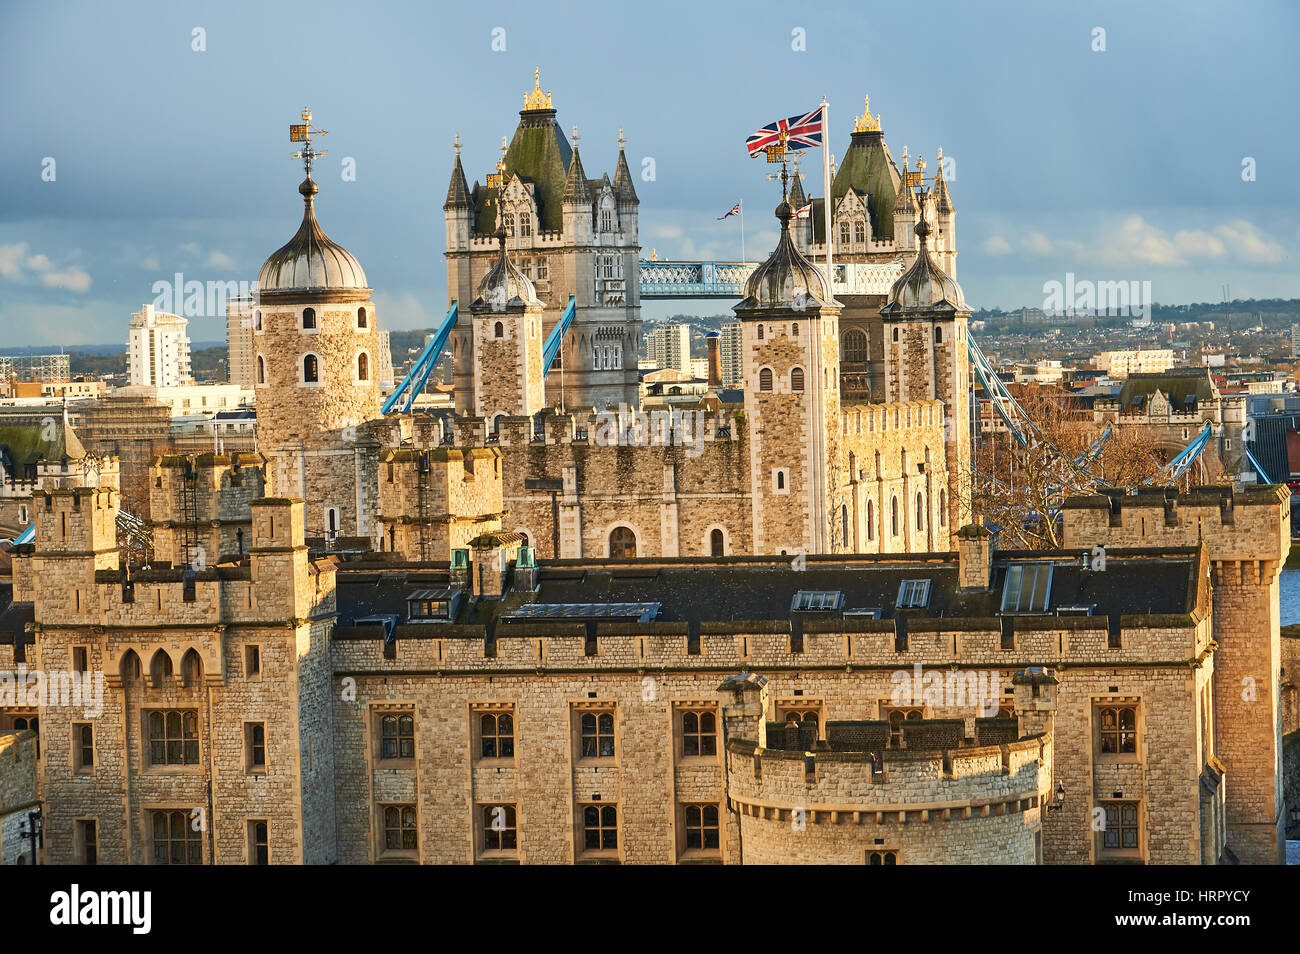 Der Tower of London in der City of London steht seit Wilhelm dem Eroberer zunächst den weißen Turm gebaut, heute ist es eine beliebte Touristenattraktion Stockfoto